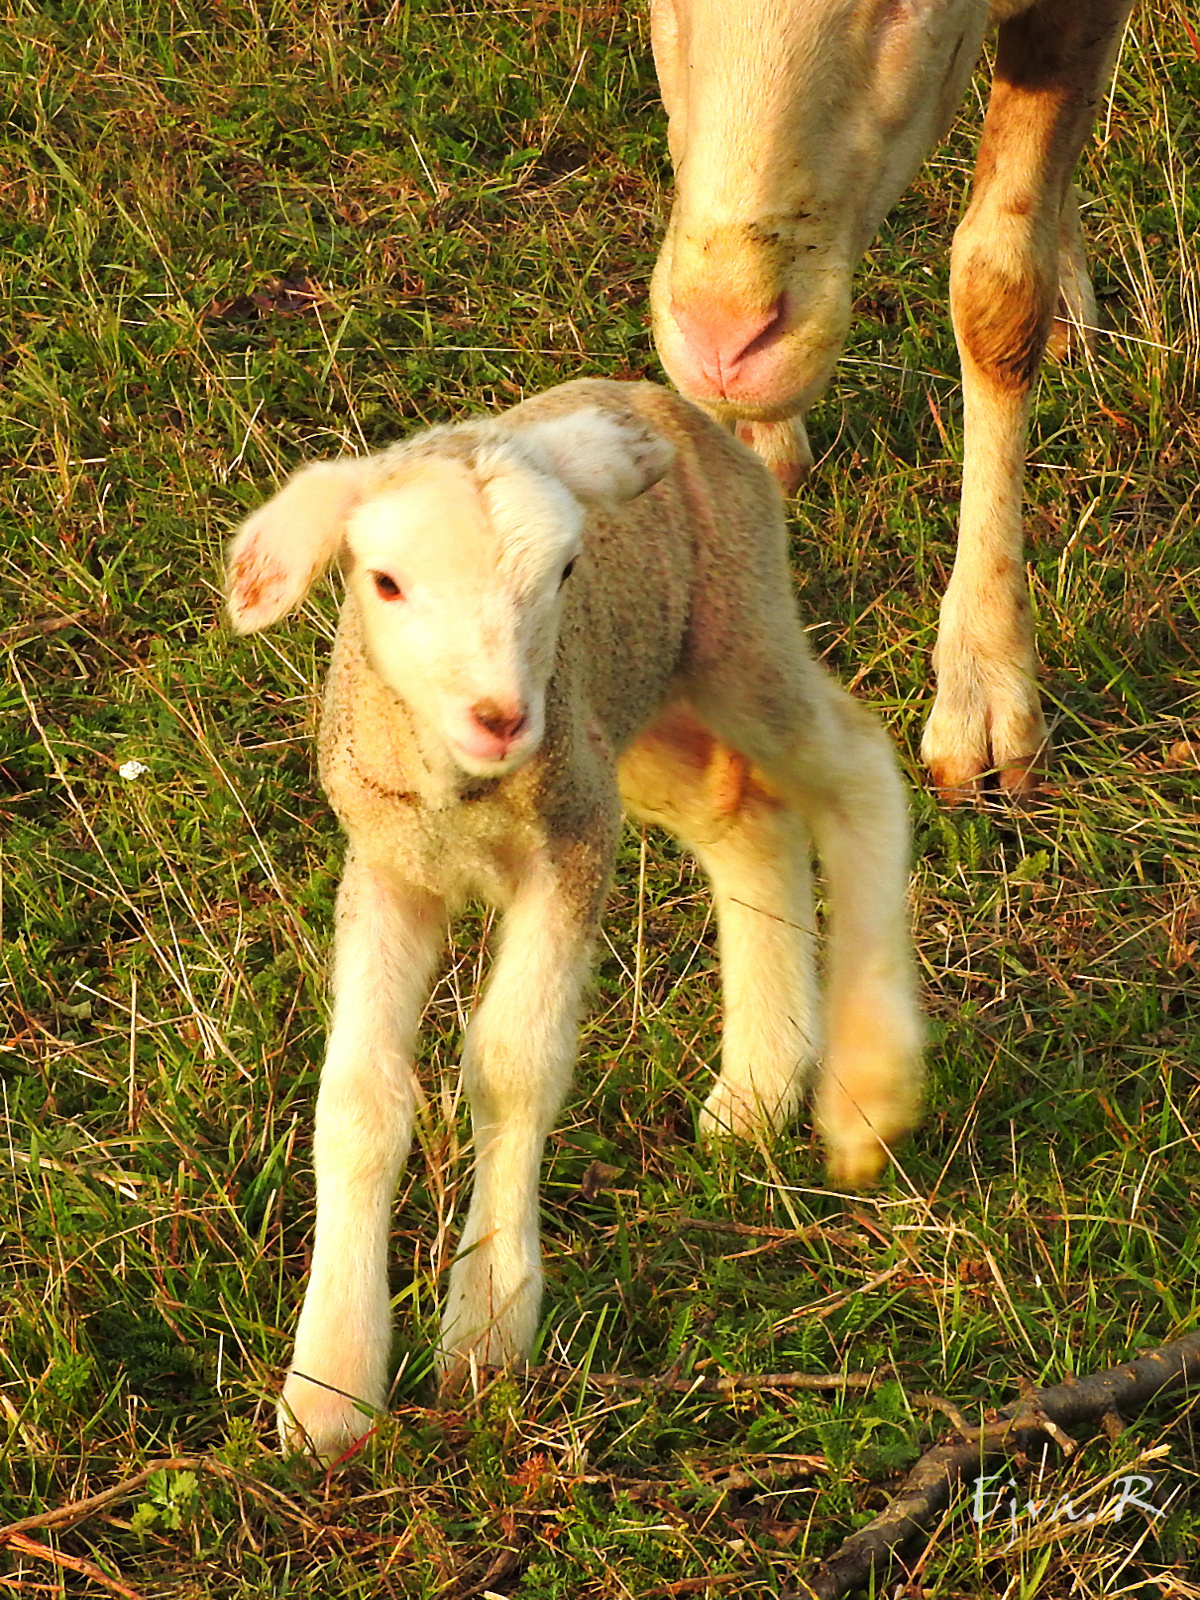 Ma született bárány :)